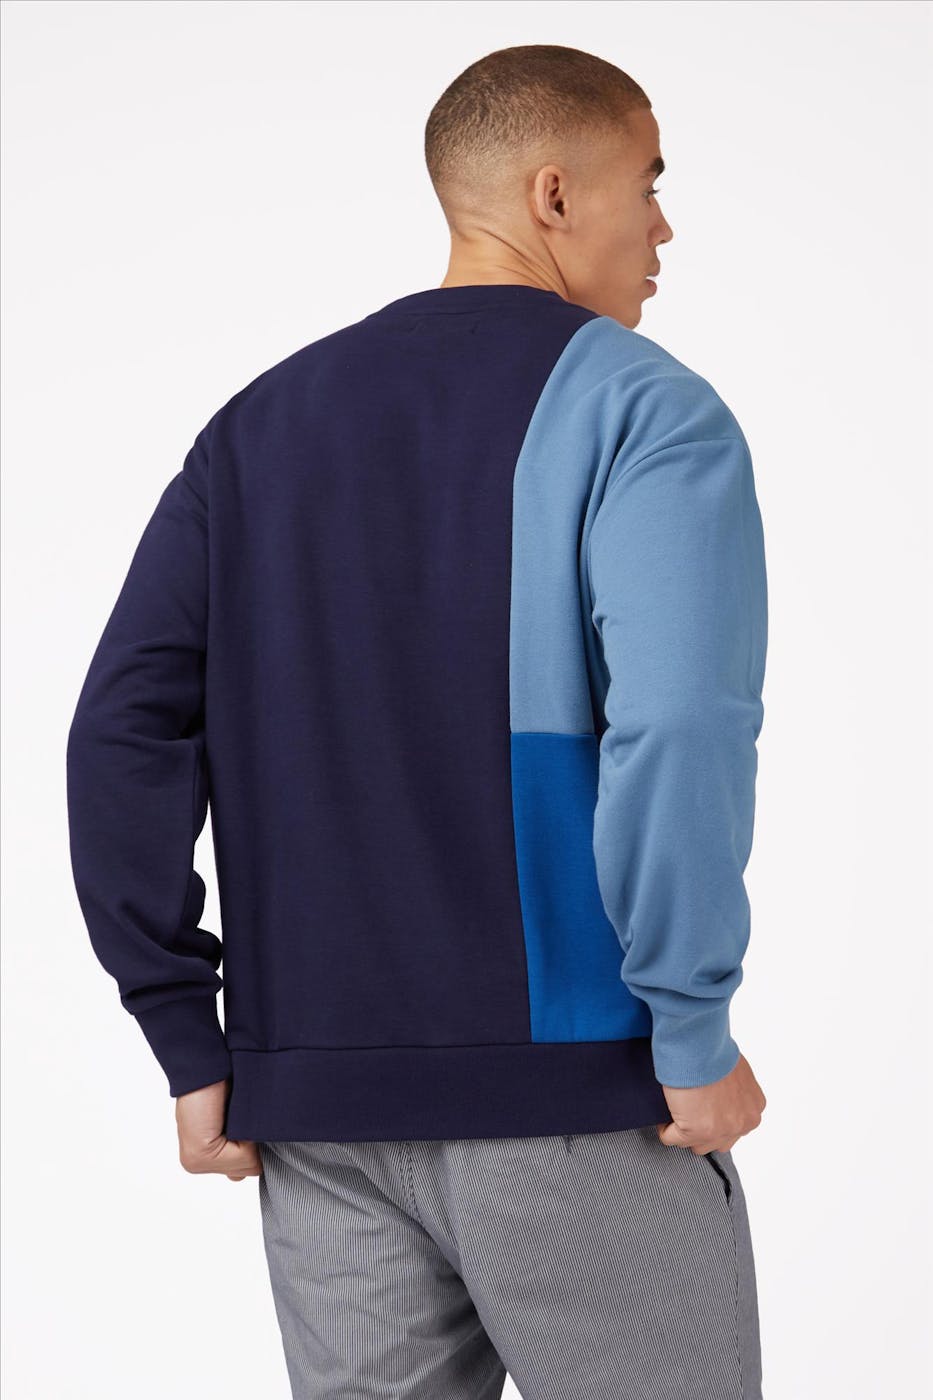 Ben Sherman - Blauwe Patched sweater